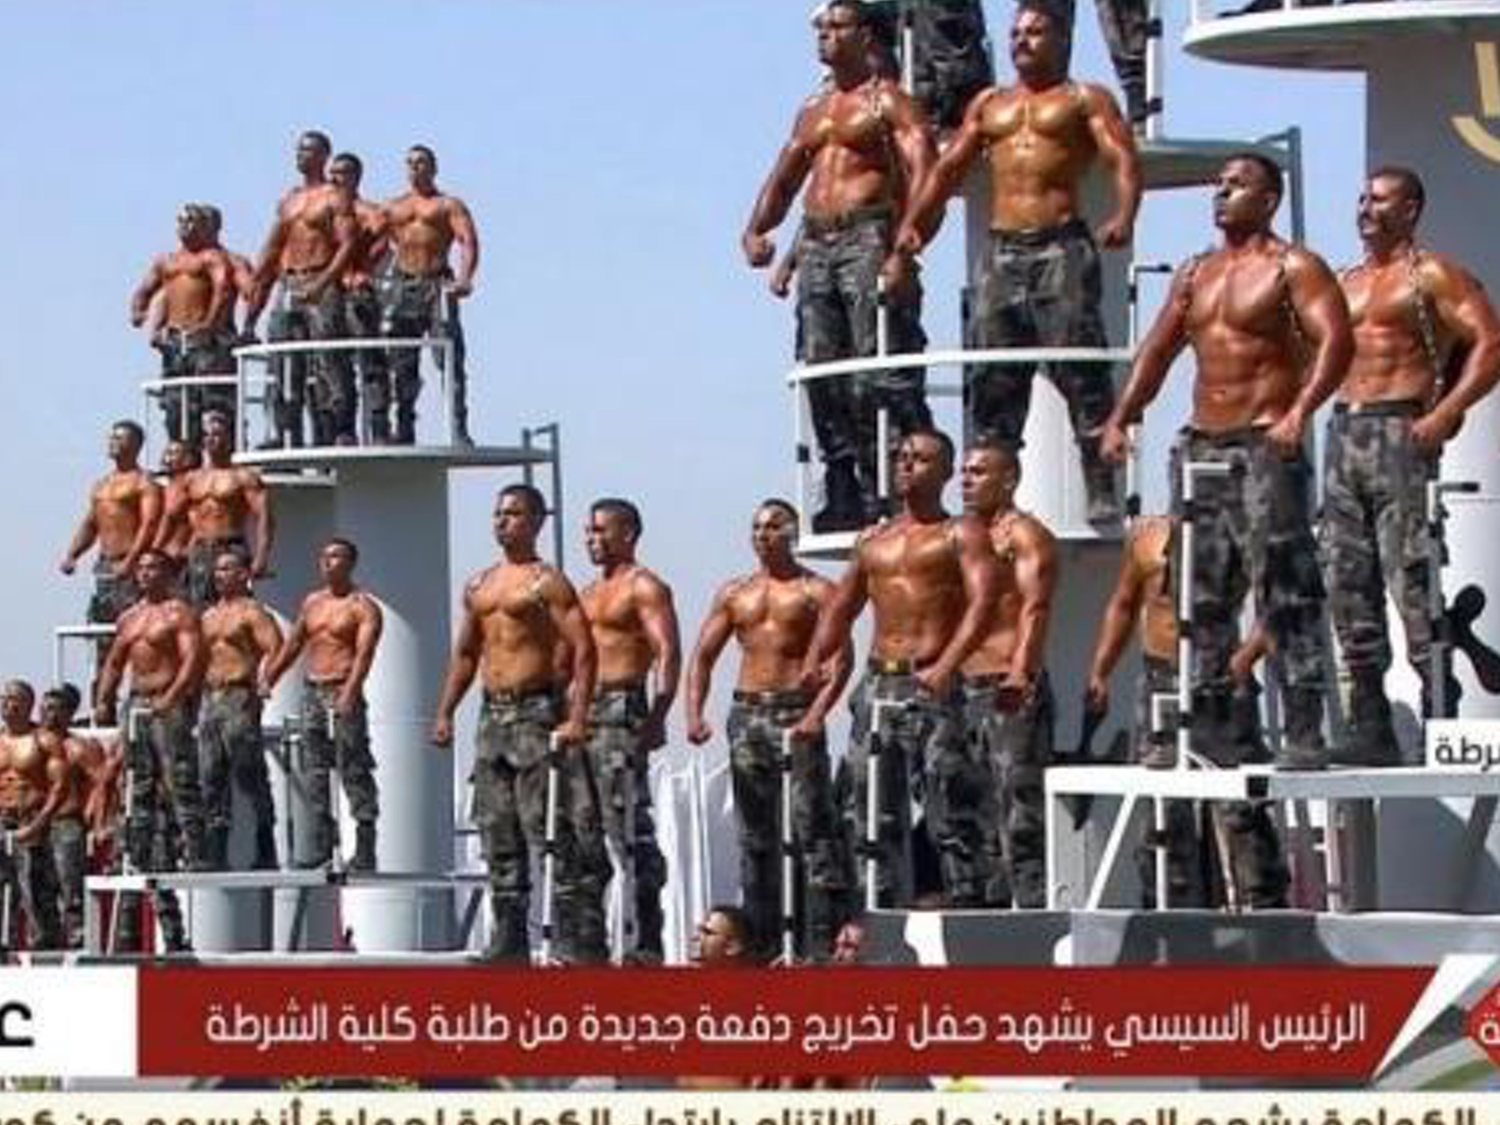 El sexy desfile de graduación de la Policía de Egipto enloquece a las redes